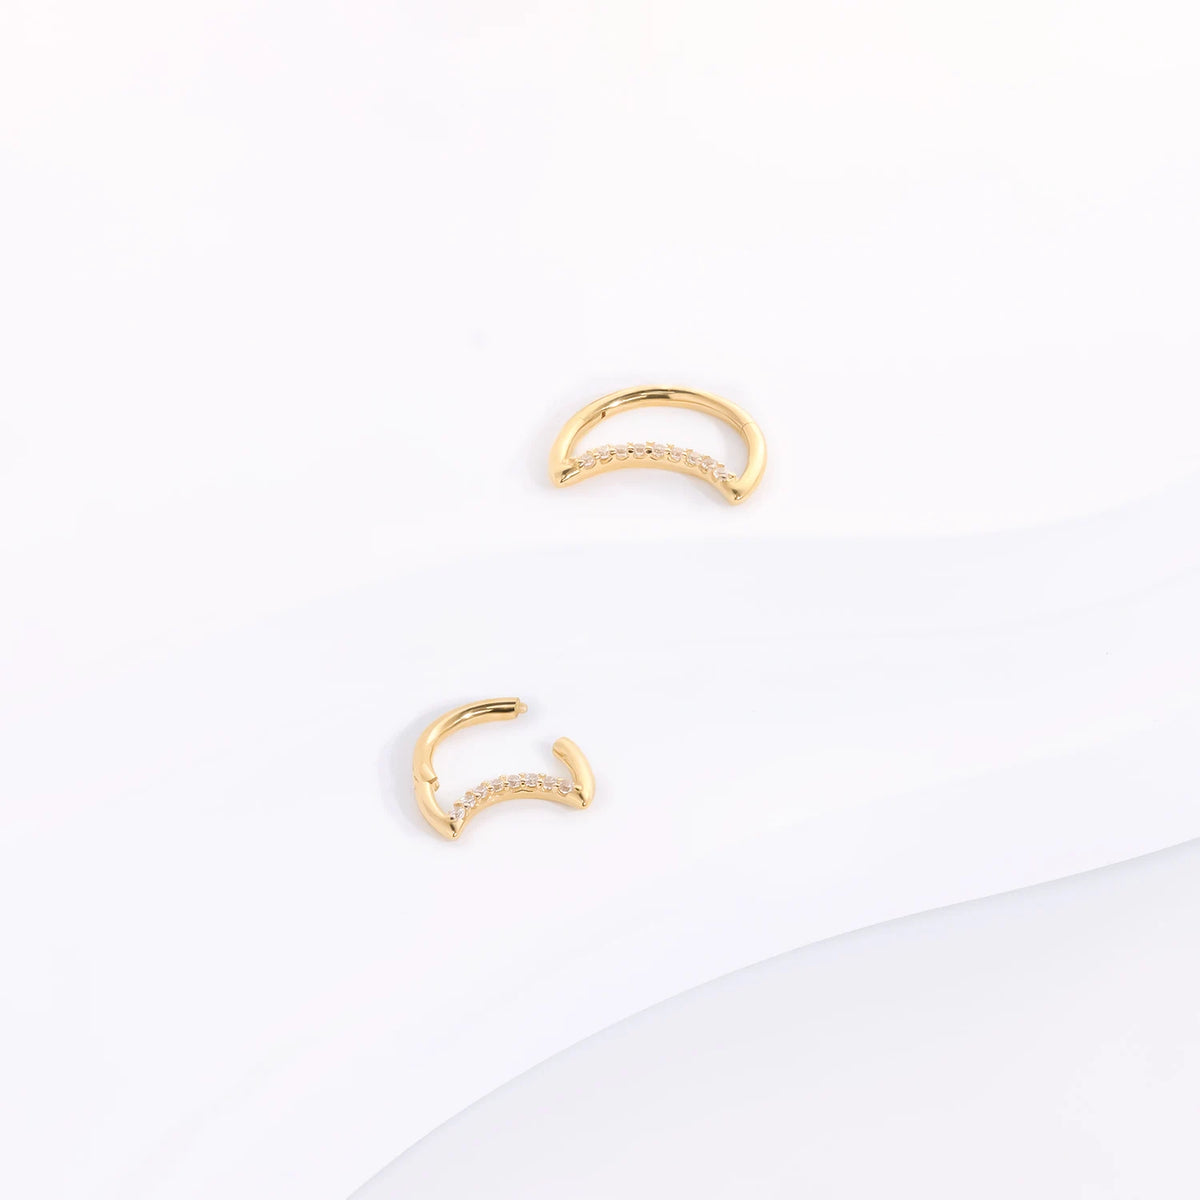 Halbmond-Creolenohrring mit klaren CZ-Steinen, 14-karätiges Gold, Nasenring, Halbmond-Piercing, Mond-Daith-Piercing-Segment-Clicker